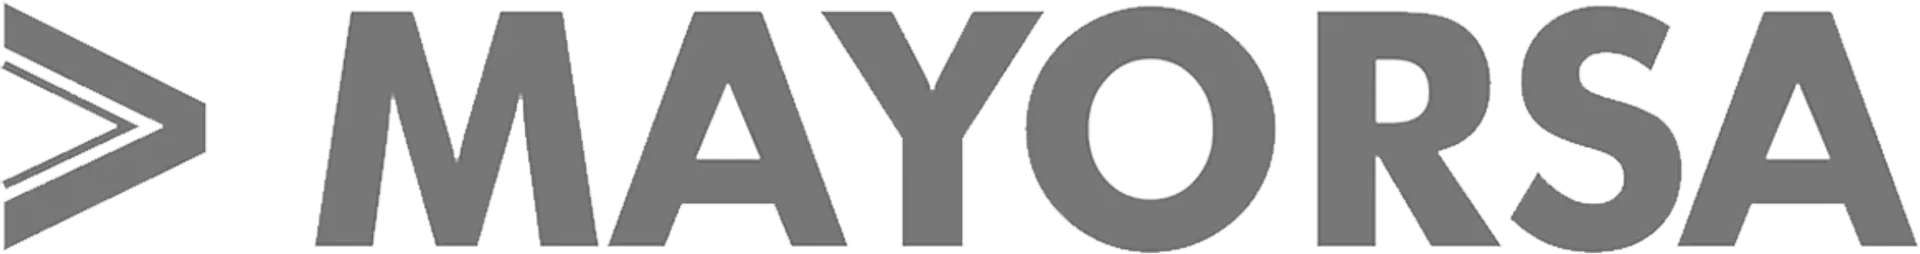 MAYORSA logo